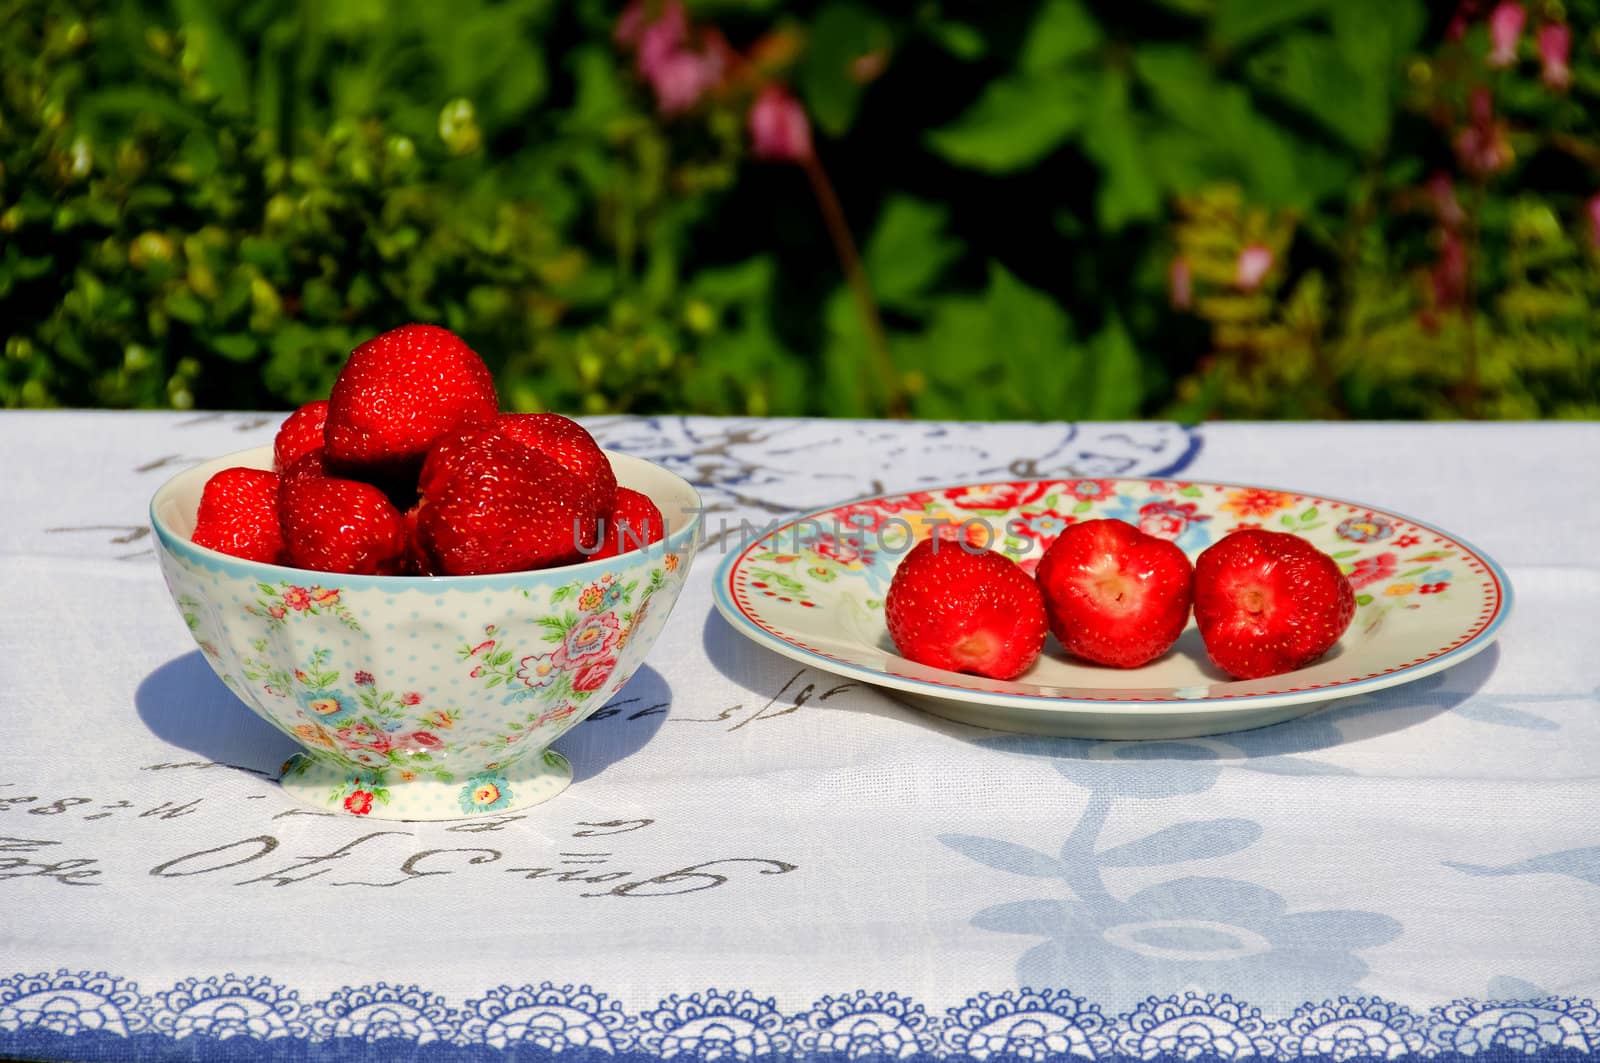 Serving strawberries in the garden